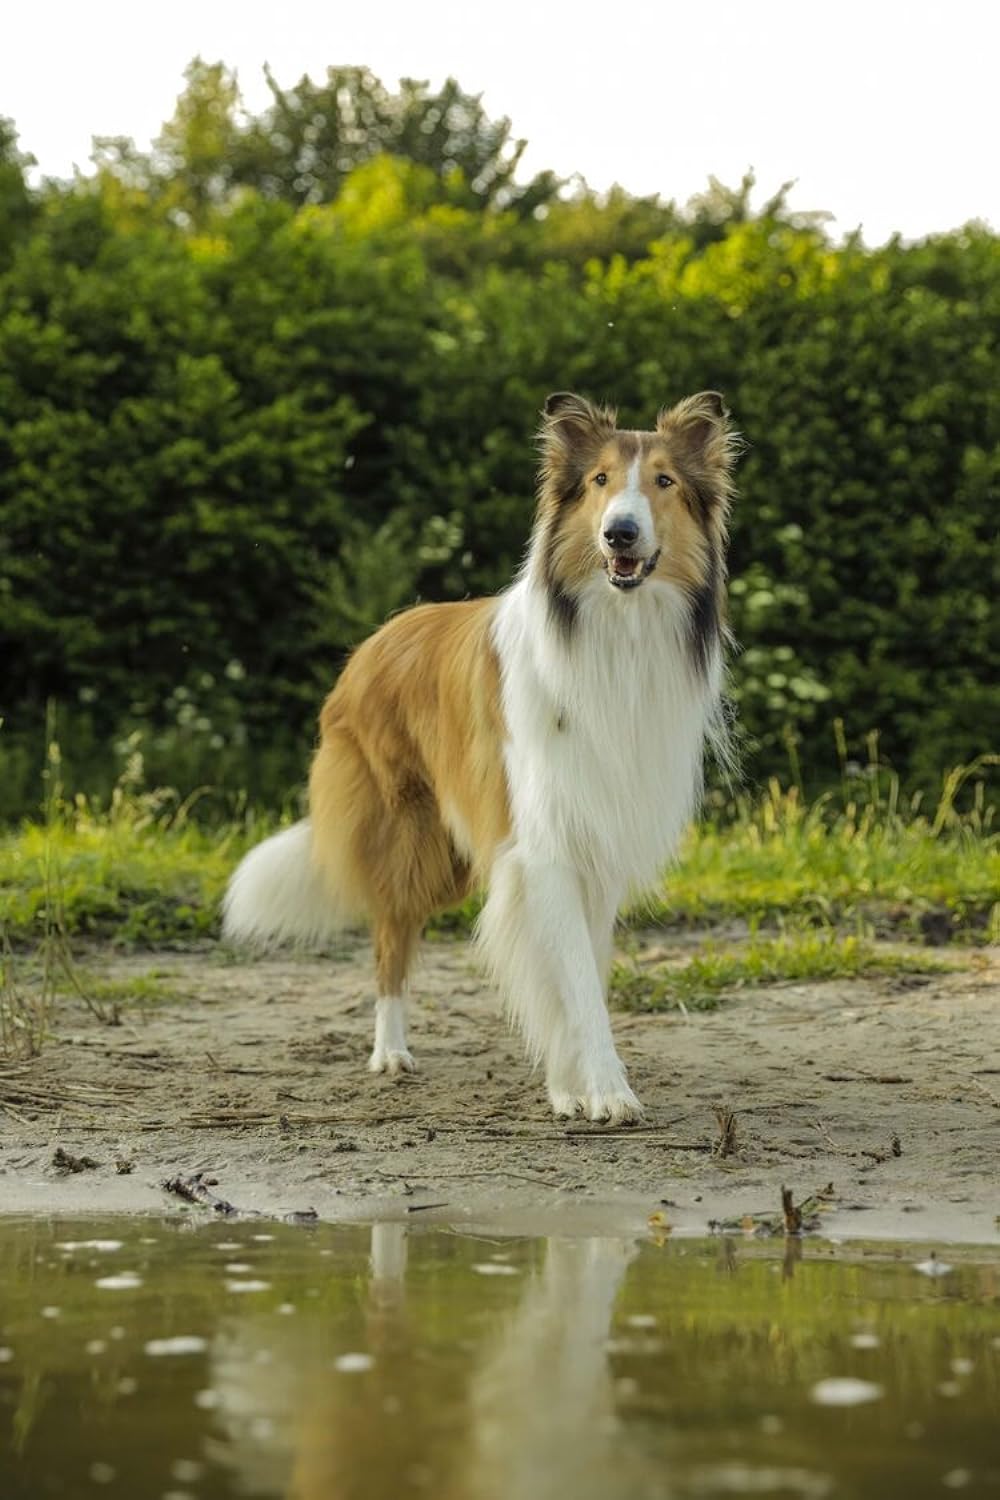 دانلود فیلم Lassie Come Home 2020